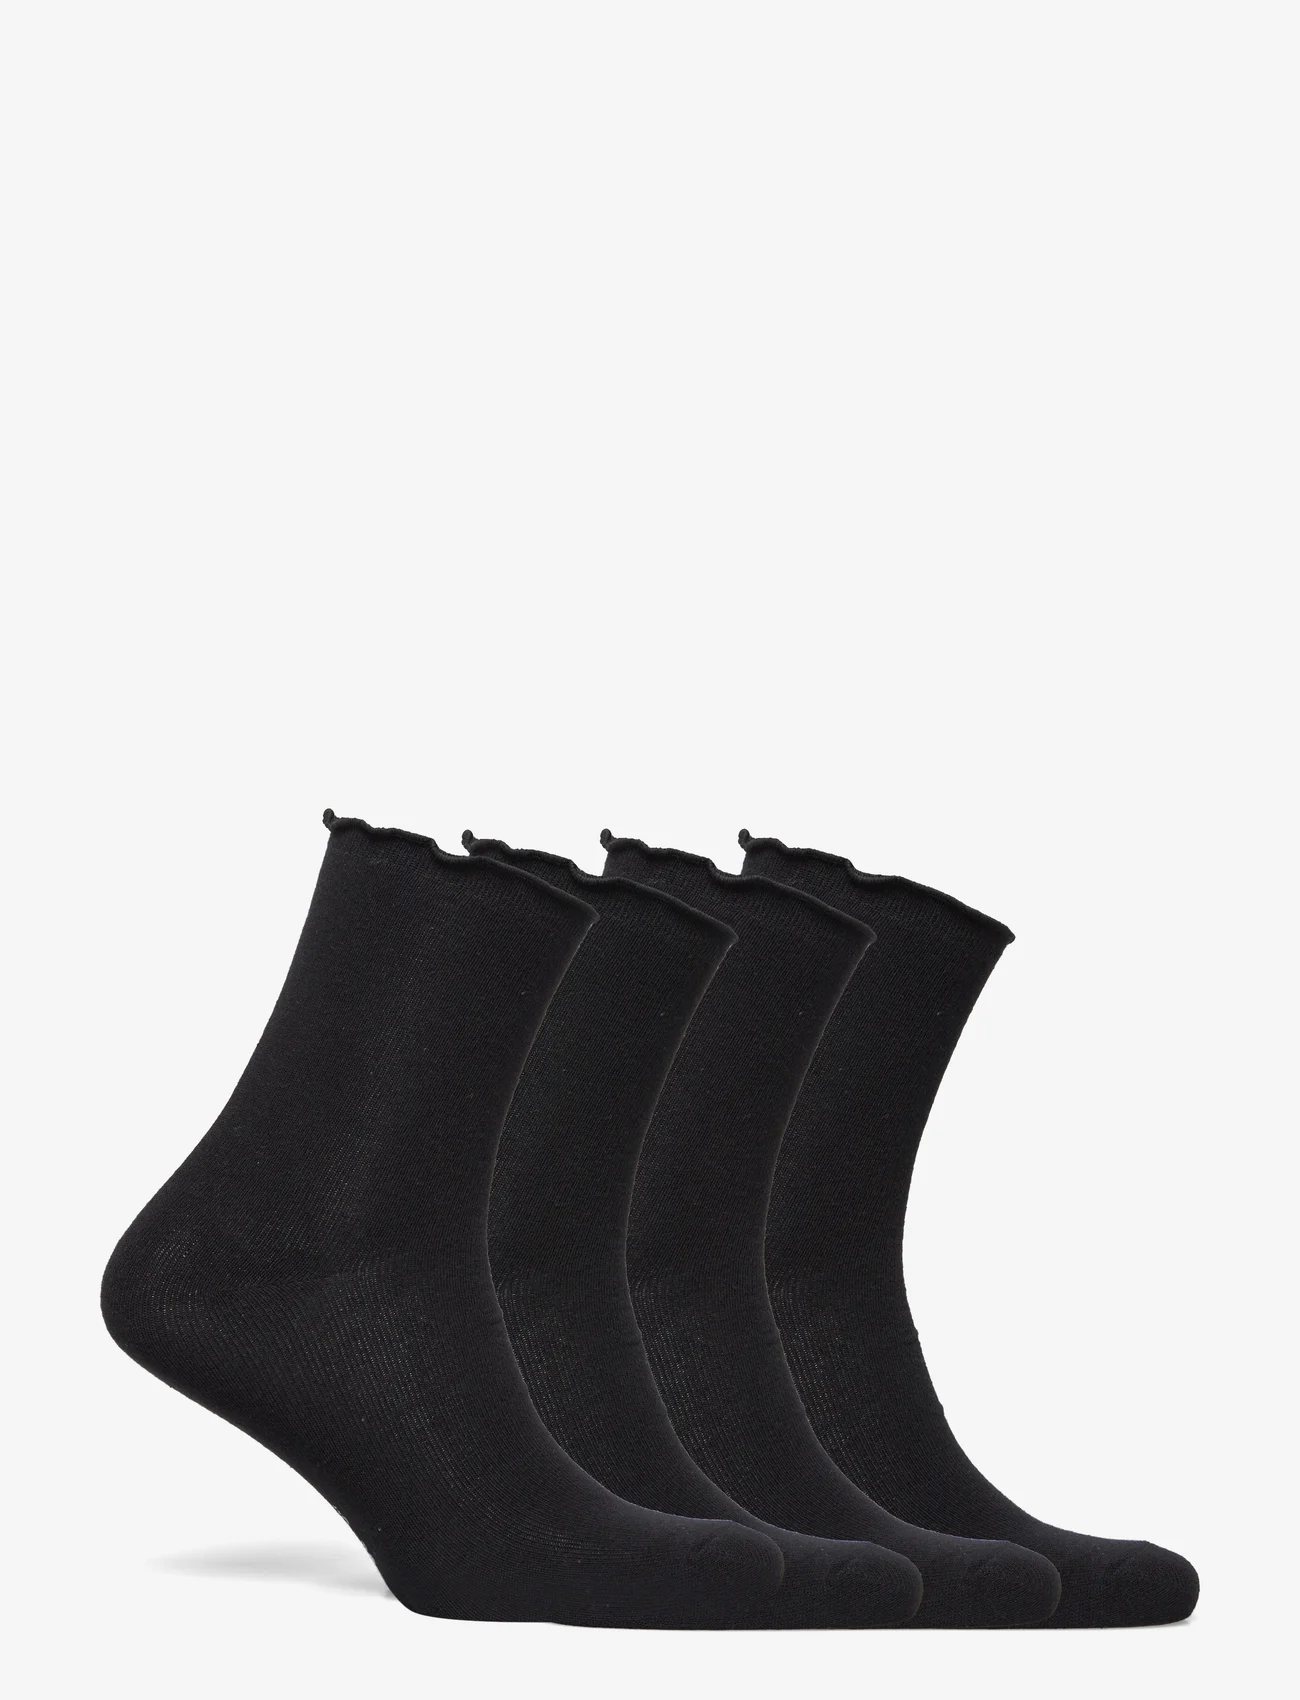 Rosemunde - RHAtlanta socks - 4-pack - madalaimad hinnad - black - 1